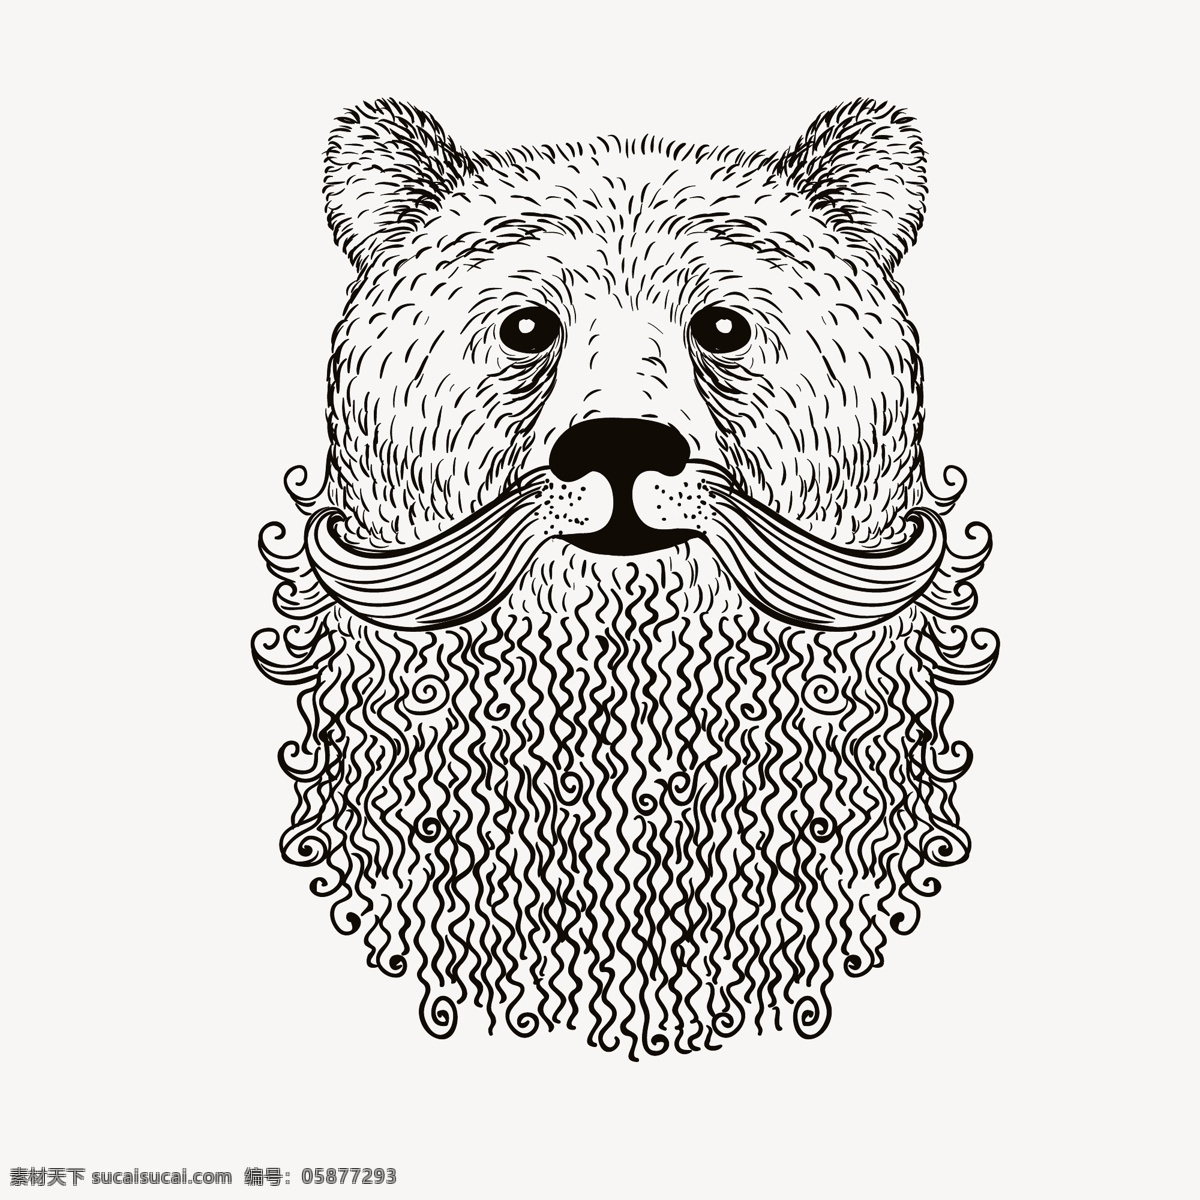 时尚 趣味 手绘 狗熊 插画 动物 头像 线条